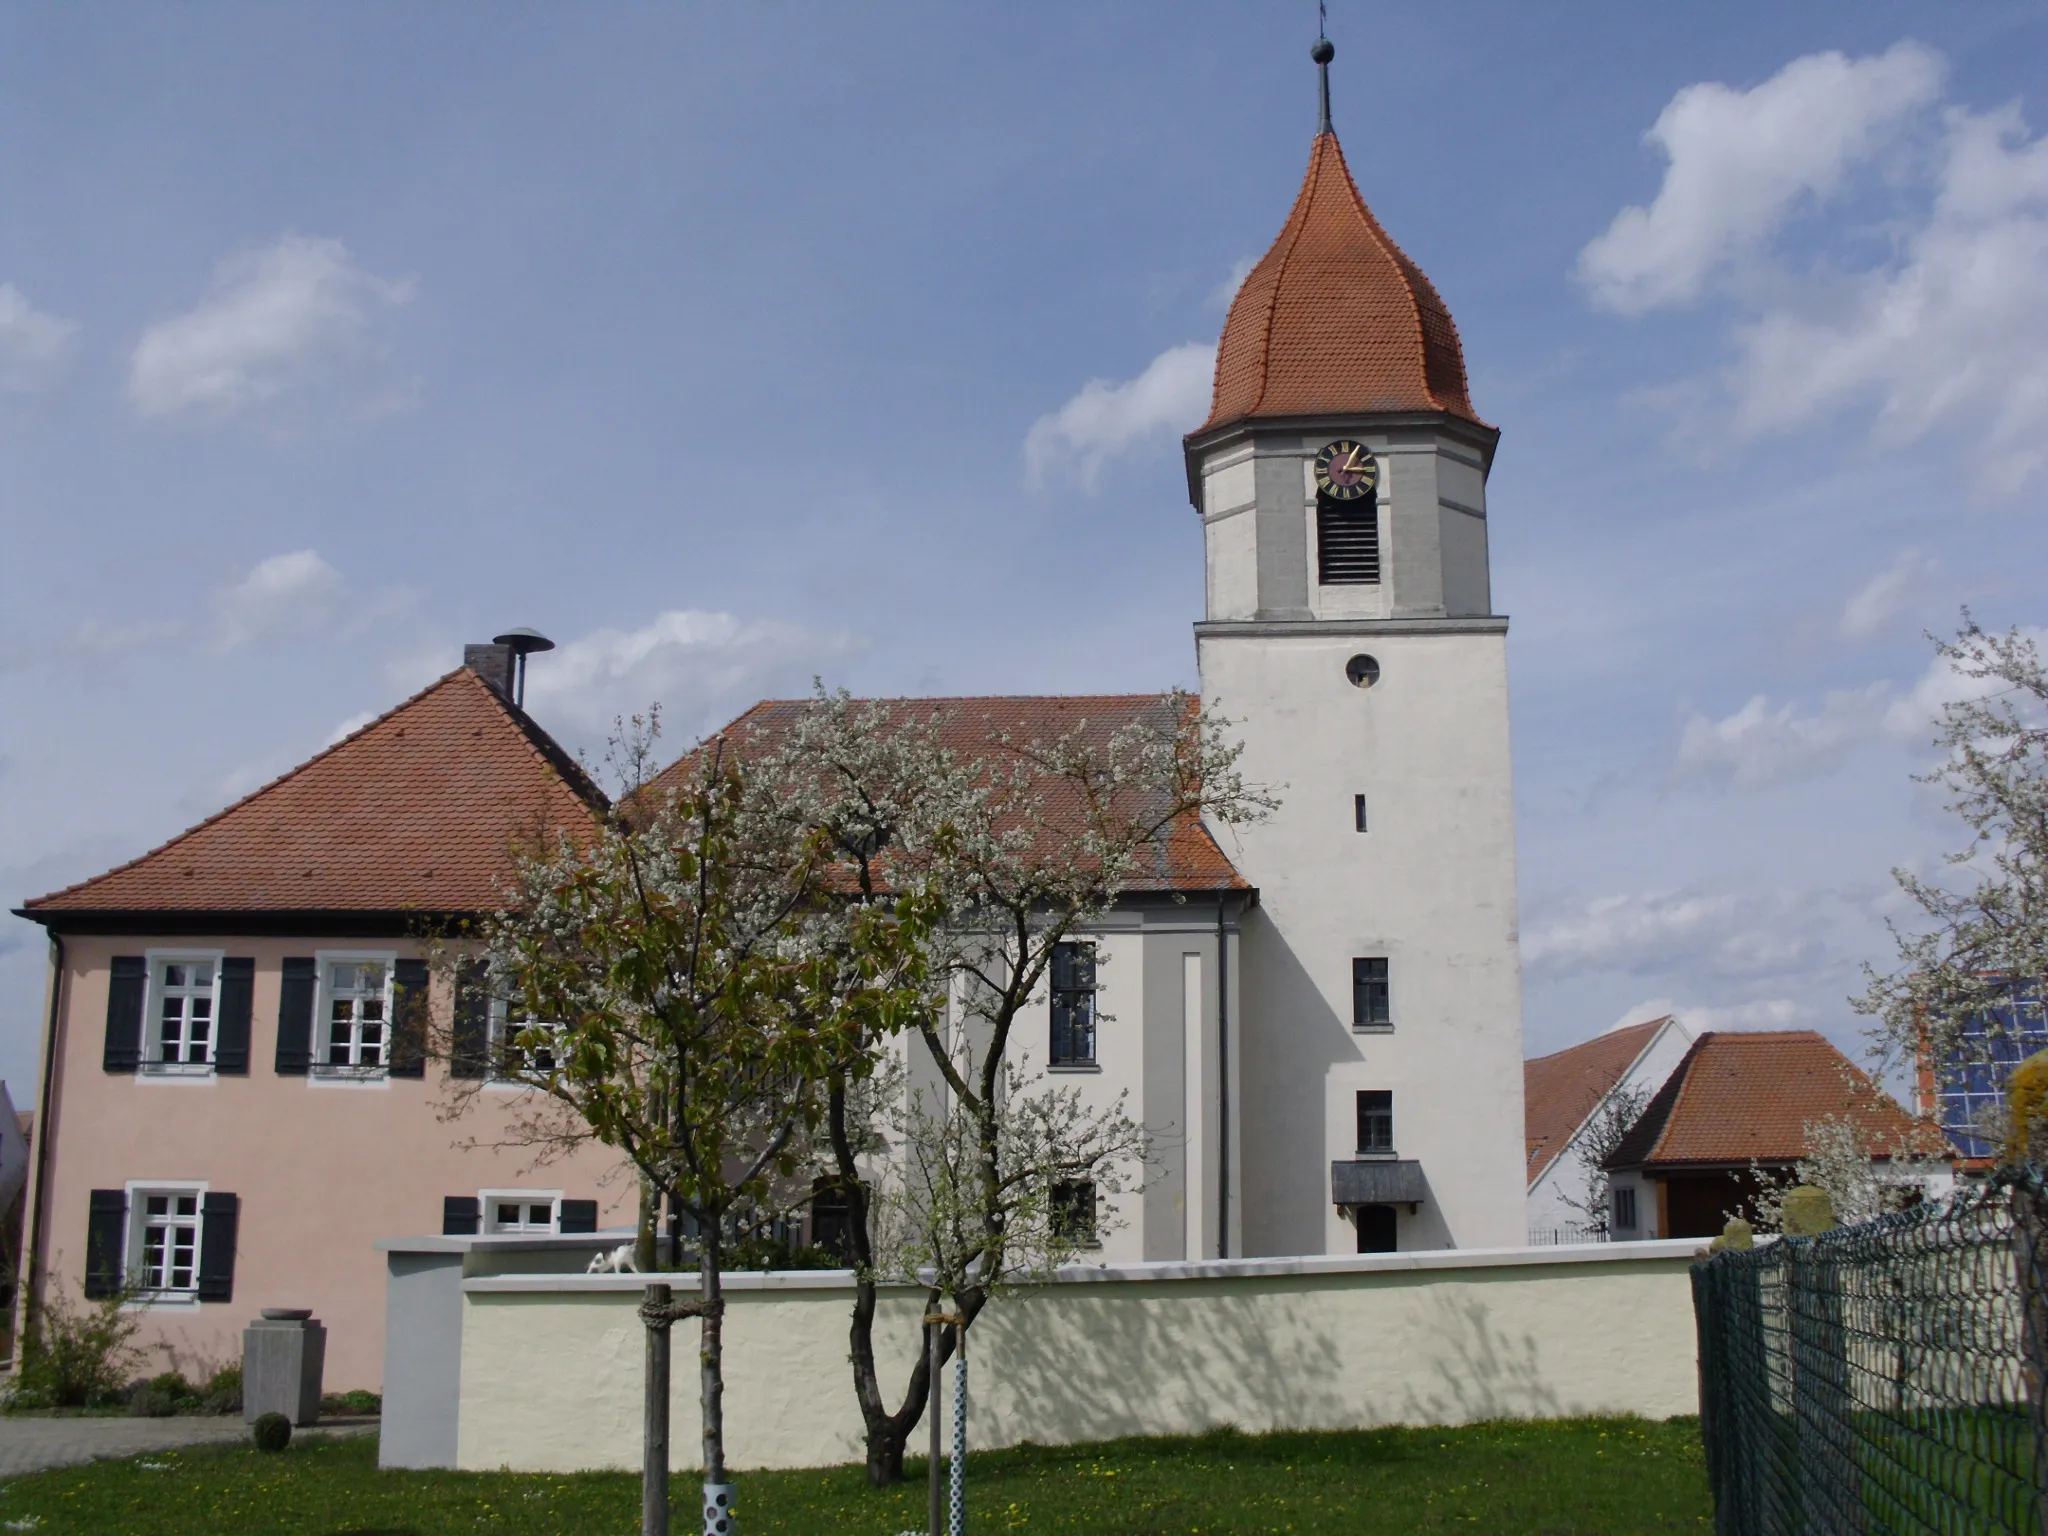 Photo showing: Sammenheim, Ortsteil der Gemeinde Dittenheim im mittelfränkischen Landkreis Weißenburg-Gunzenhausen, Kirche und Evangelisches Gemeindehaus